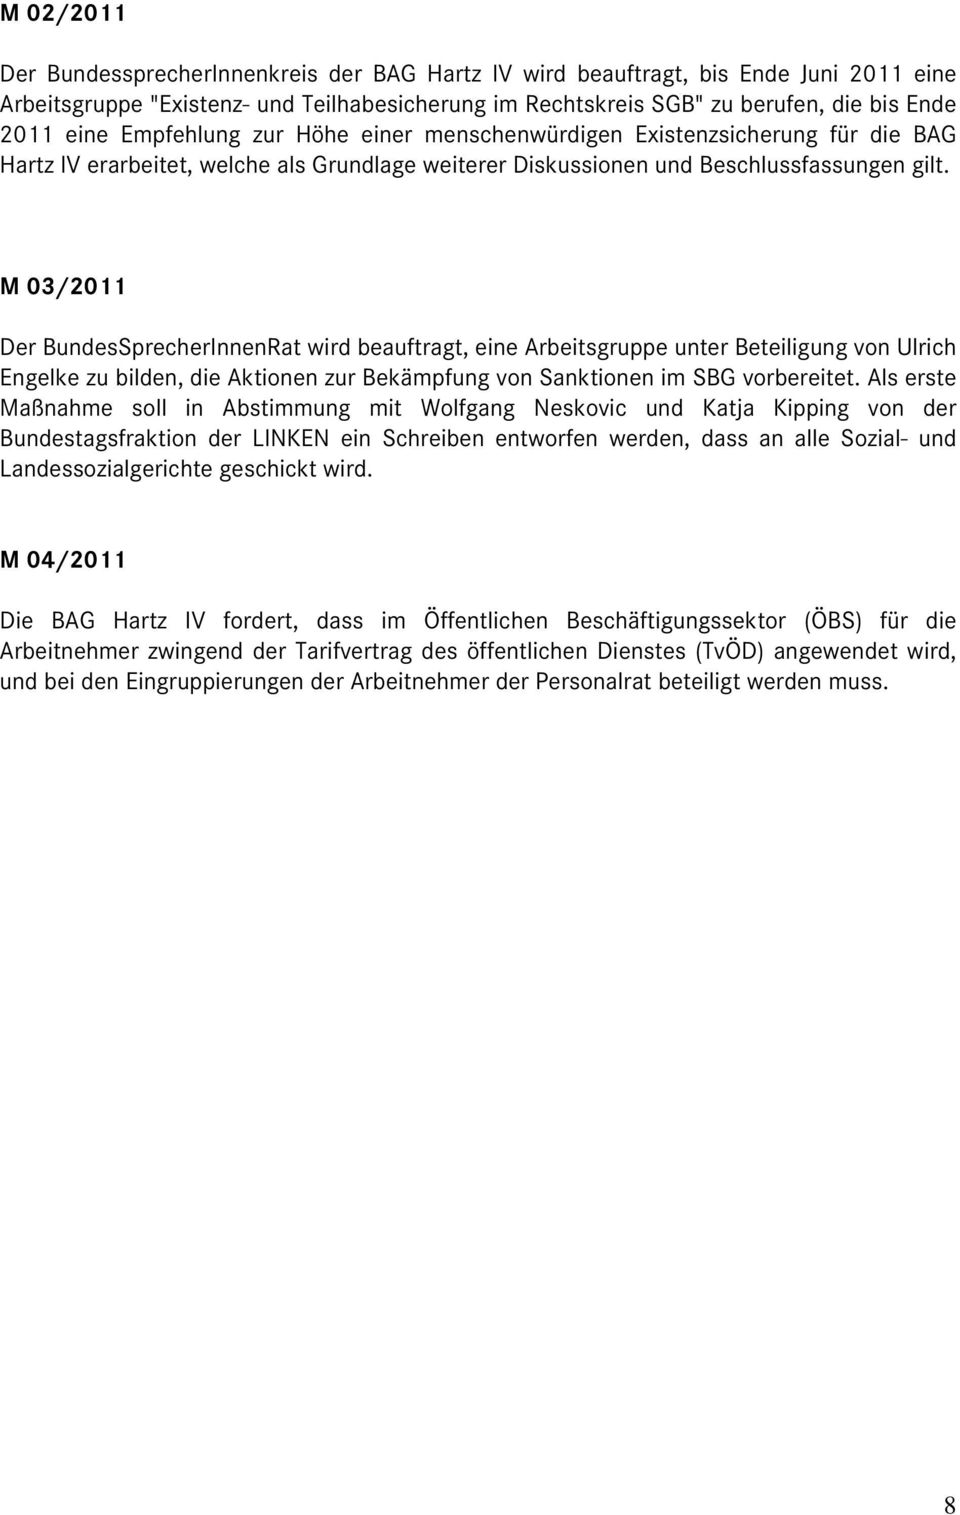 M 03/2011 Der BundesSprecherInnenRat wird beauftragt, eine Arbeitsgruppe unter Beteiligung von Ulrich Engelke zu bilden, die Aktionen zur Bekämpfung von Sanktionen im SBG vorbereitet.